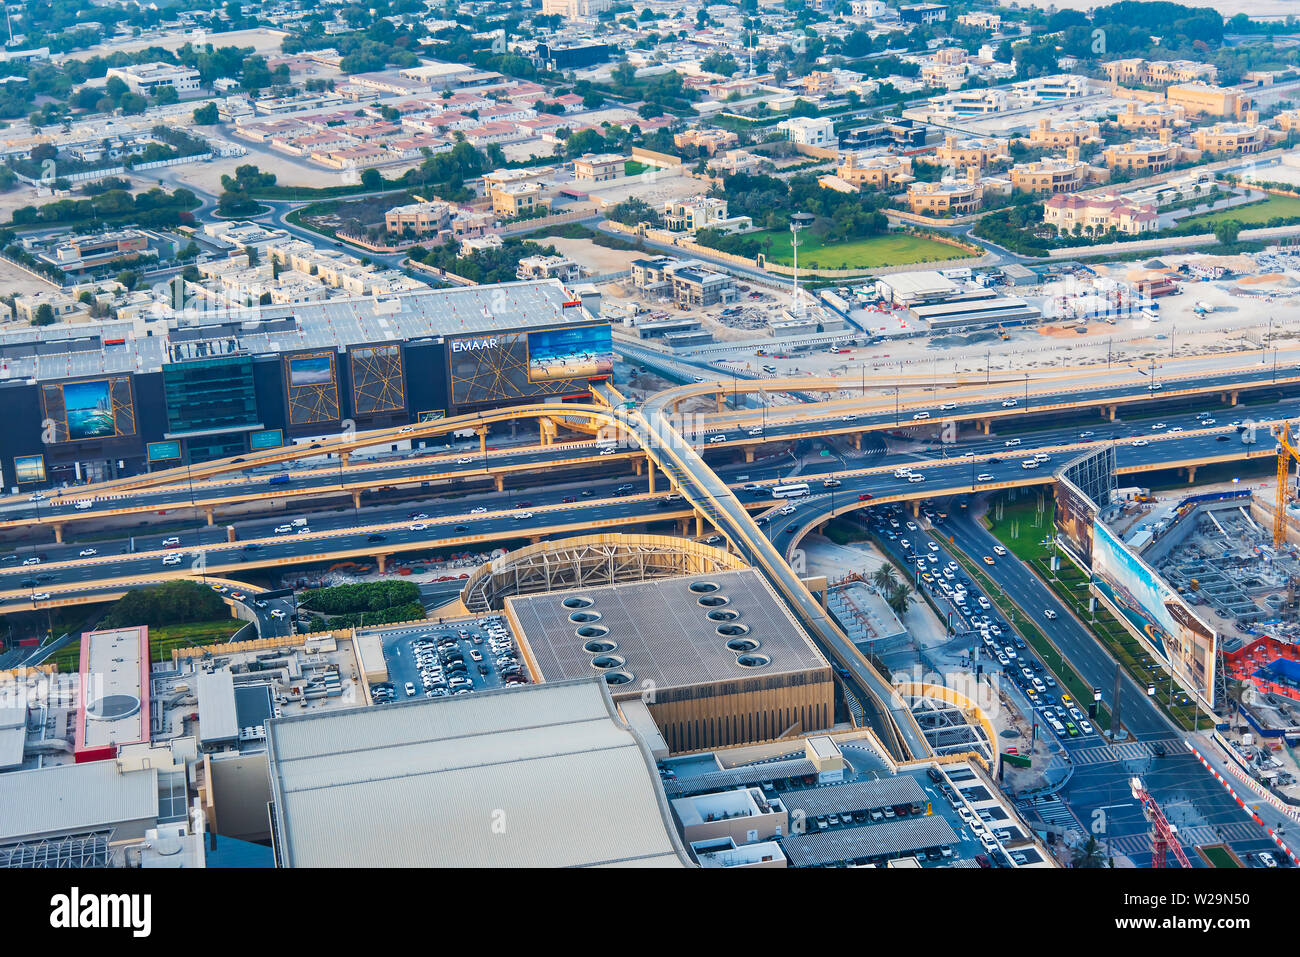 Dubai, Vereinigte Arabische Emirate - Juli 5, 2019: Straßen und Gassen der Innenstadt von Dubai, der Dubai Mall Parkplatz Ansicht von oben Stockfoto